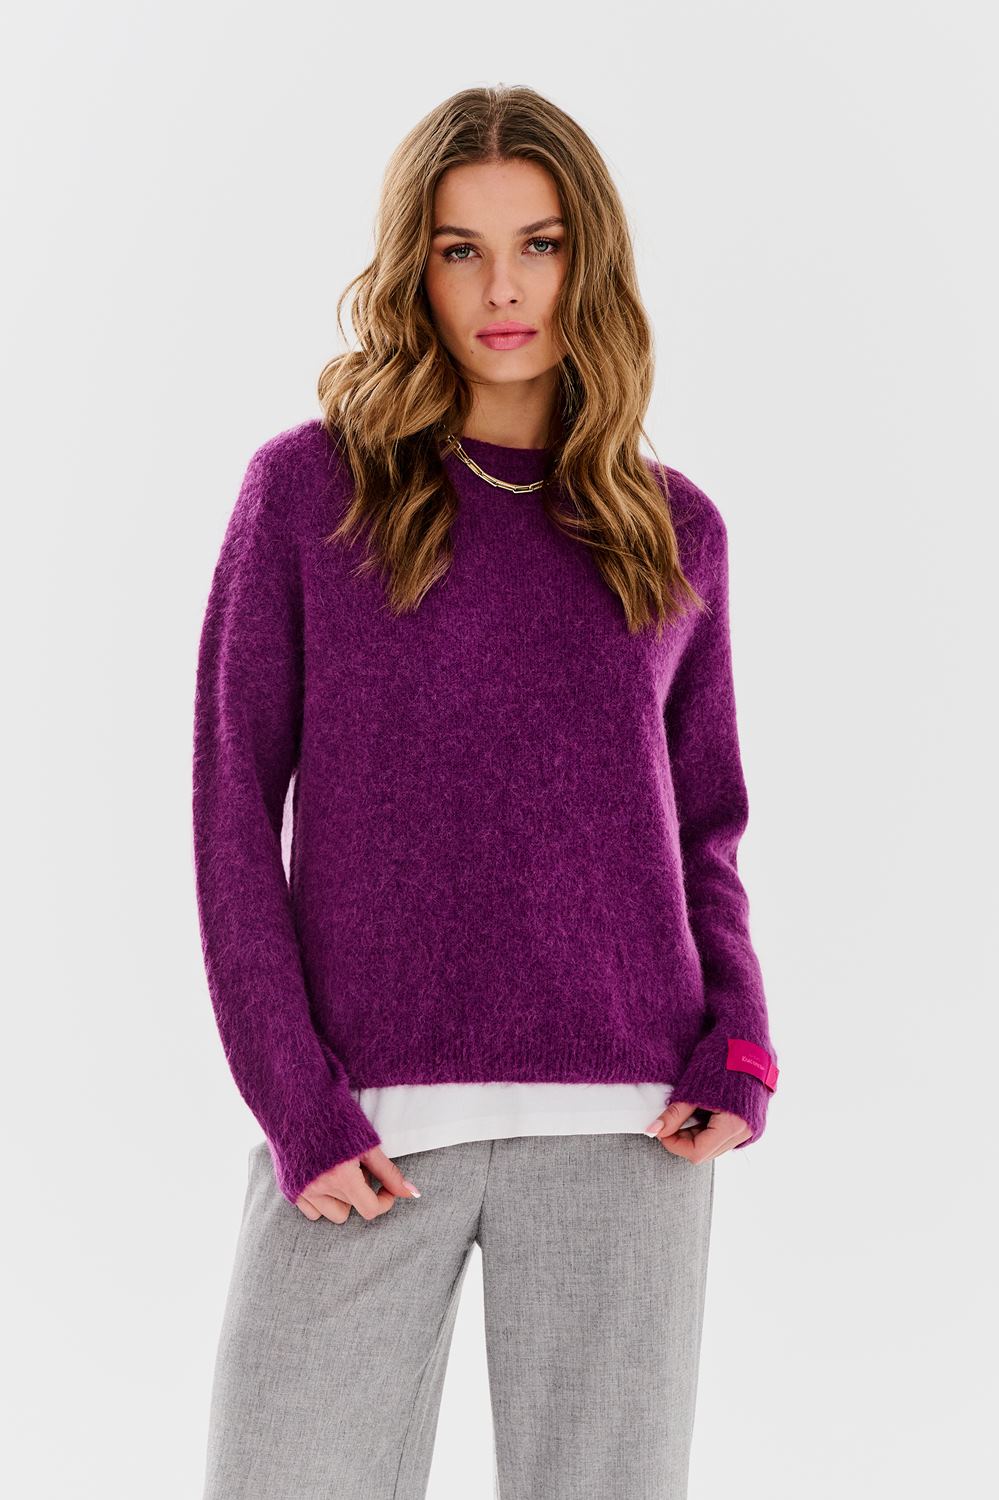 Horizon sweater